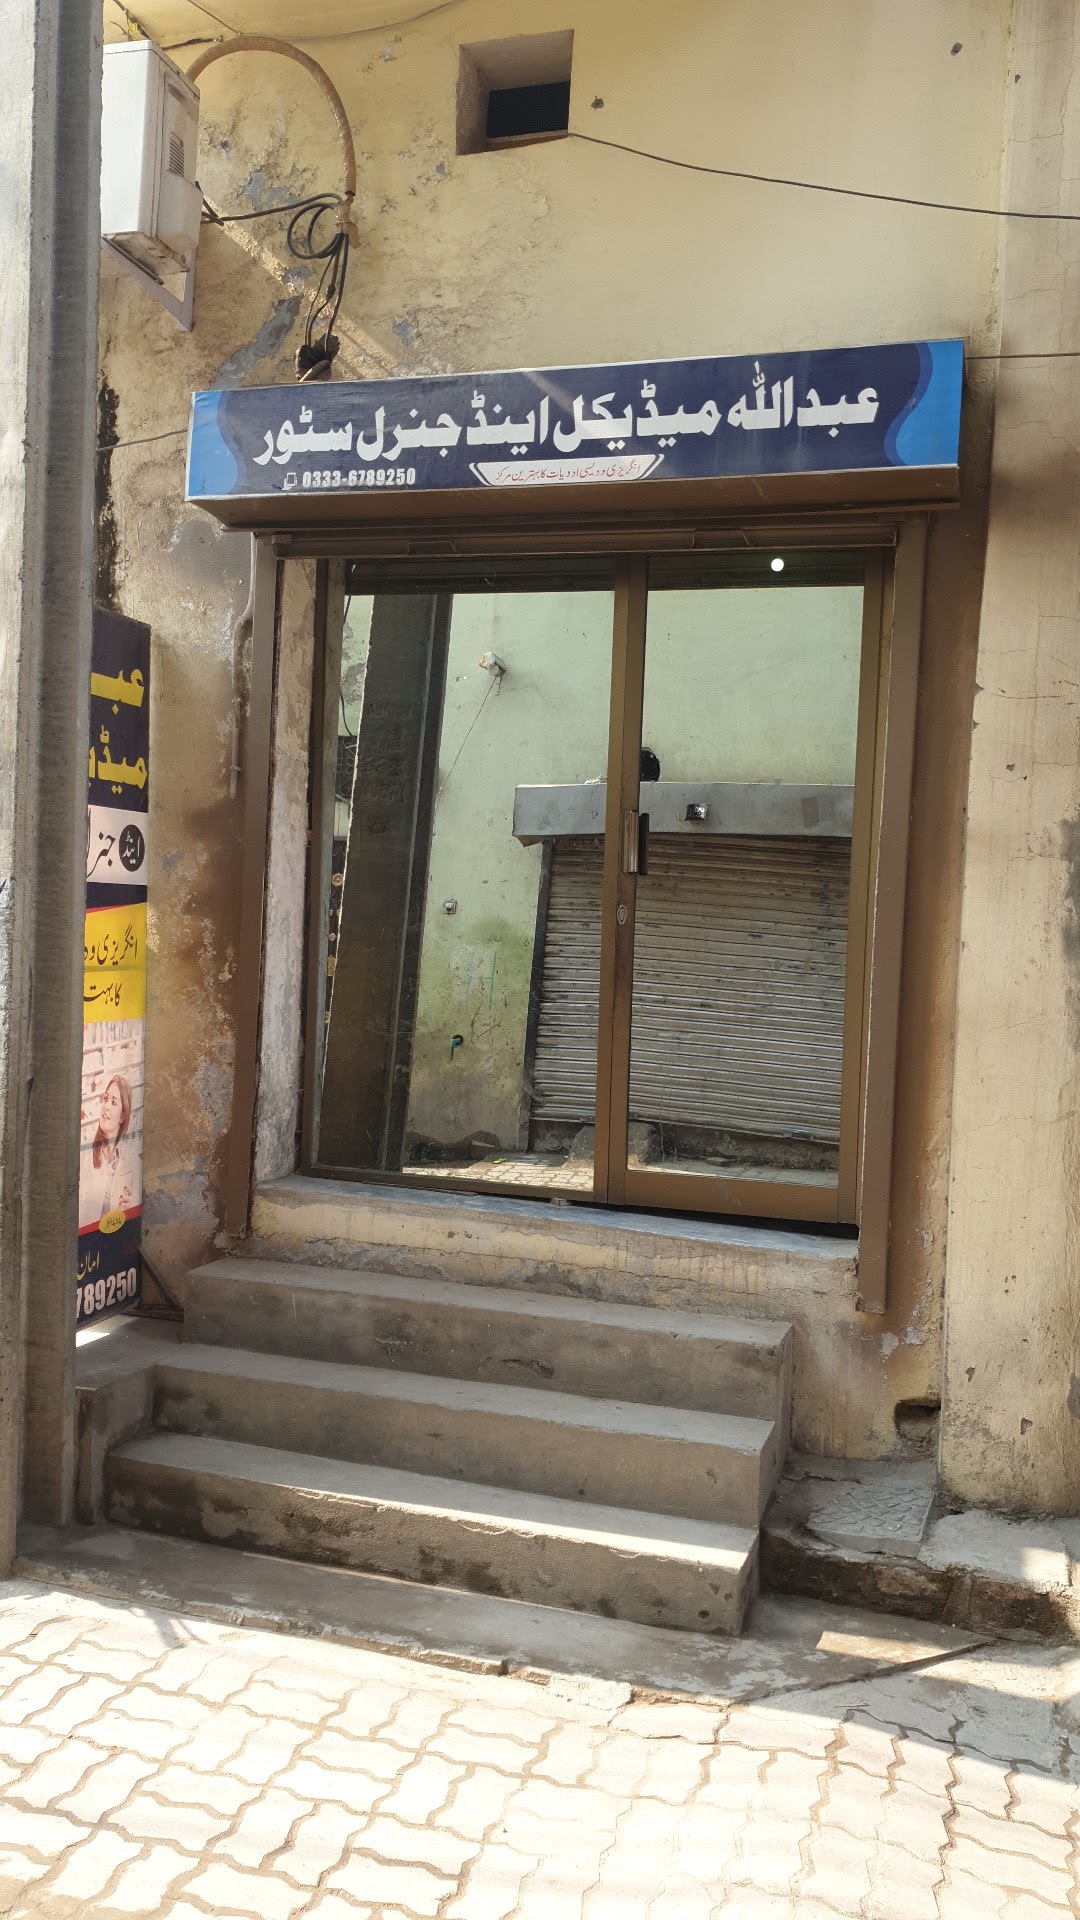 Abdullah Medical & General Store